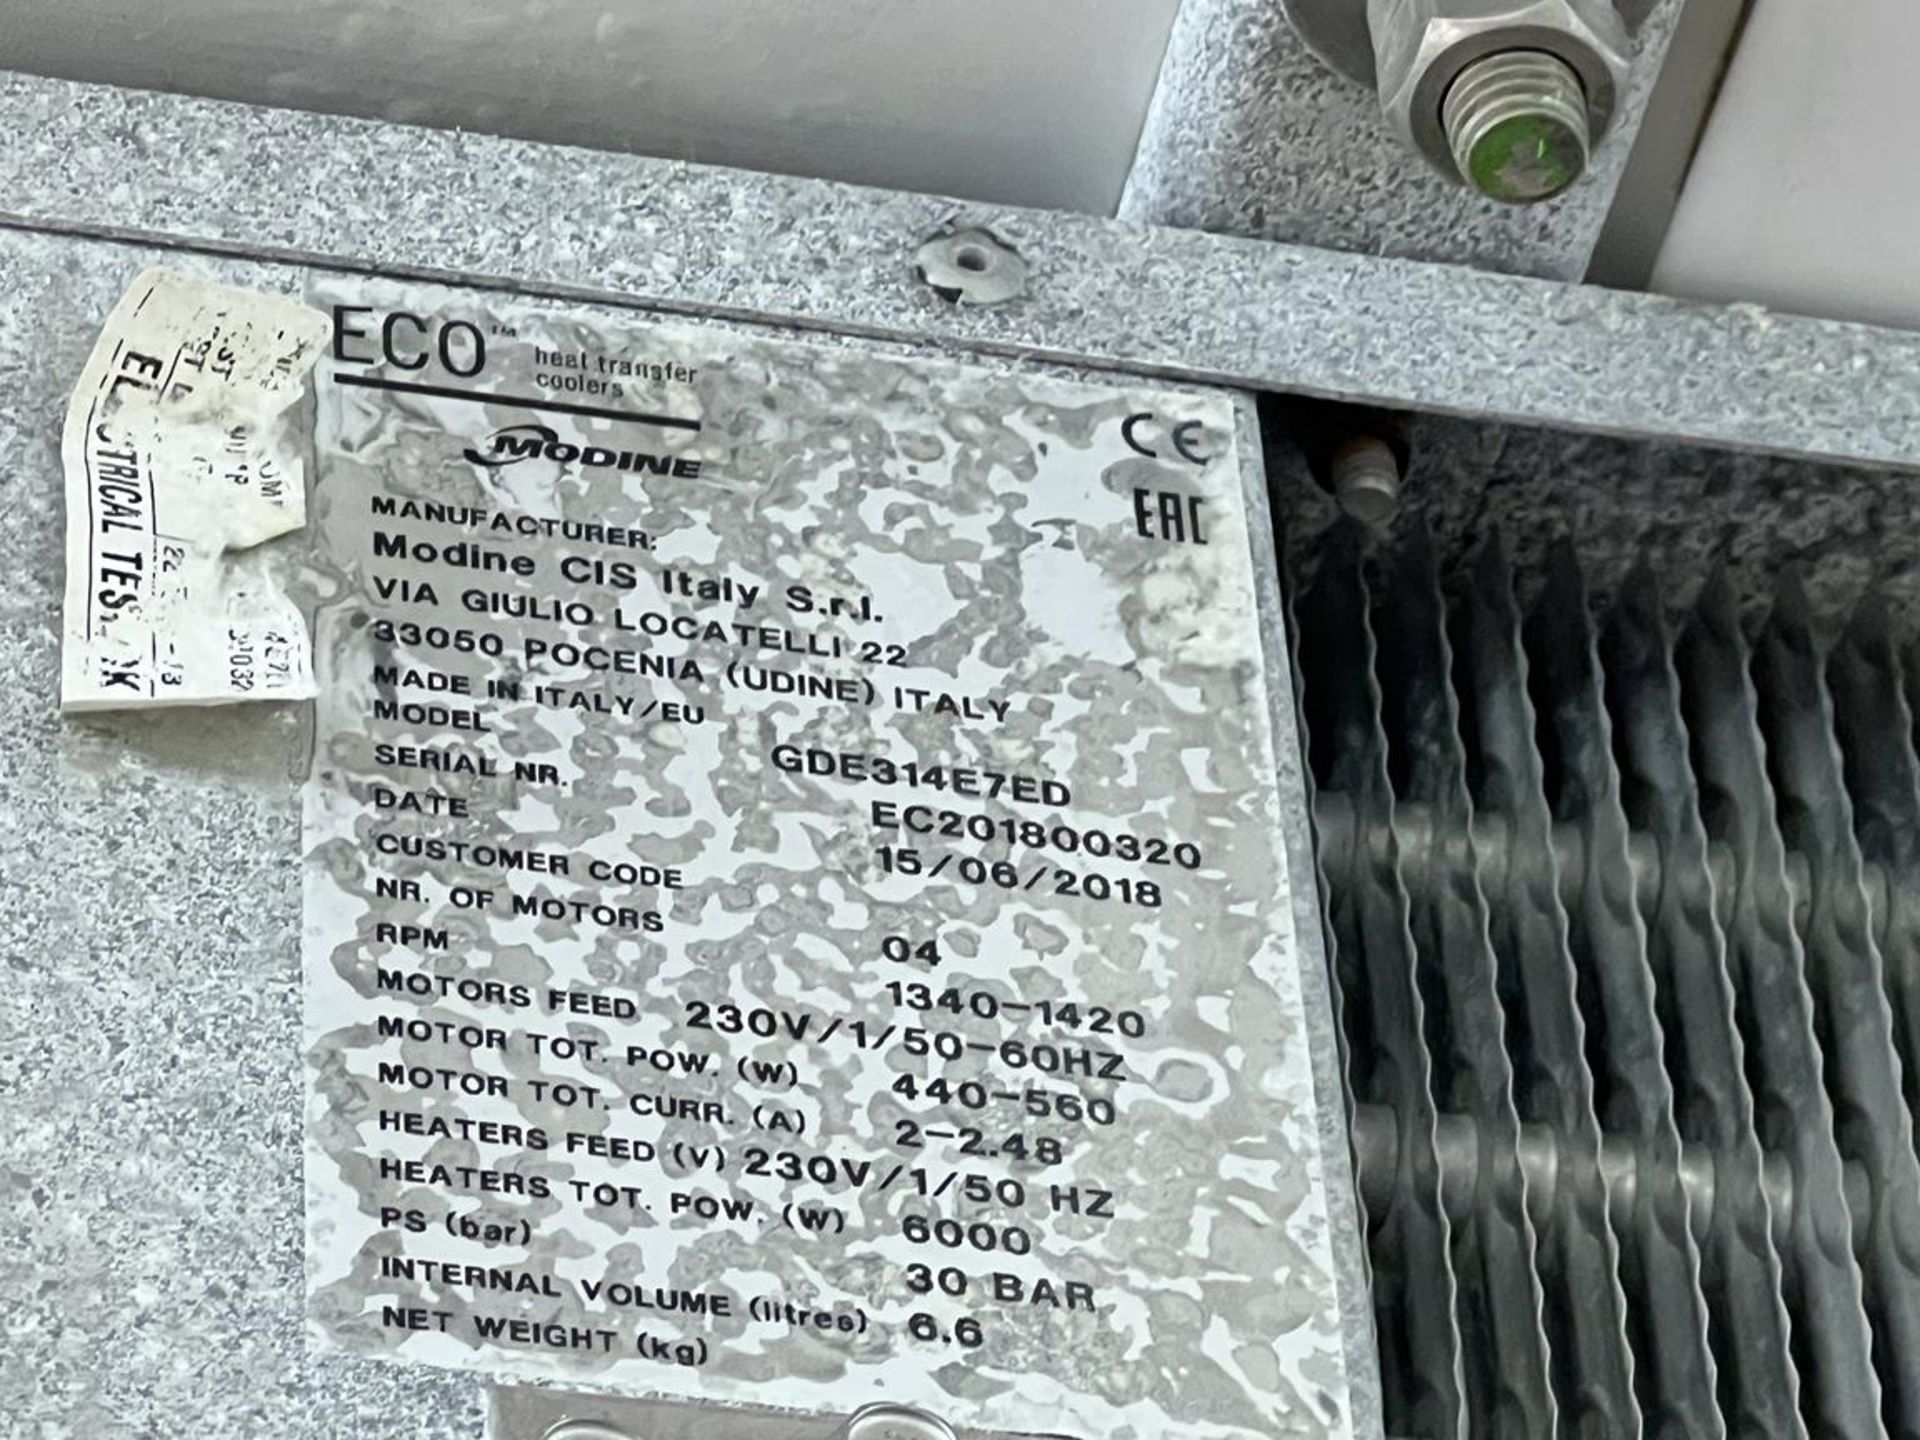 4x (no.) Eco Modine GDE314 E7ED quad fan condensing units, Serial No. EC201800219, EC201800320, - Image 10 of 13